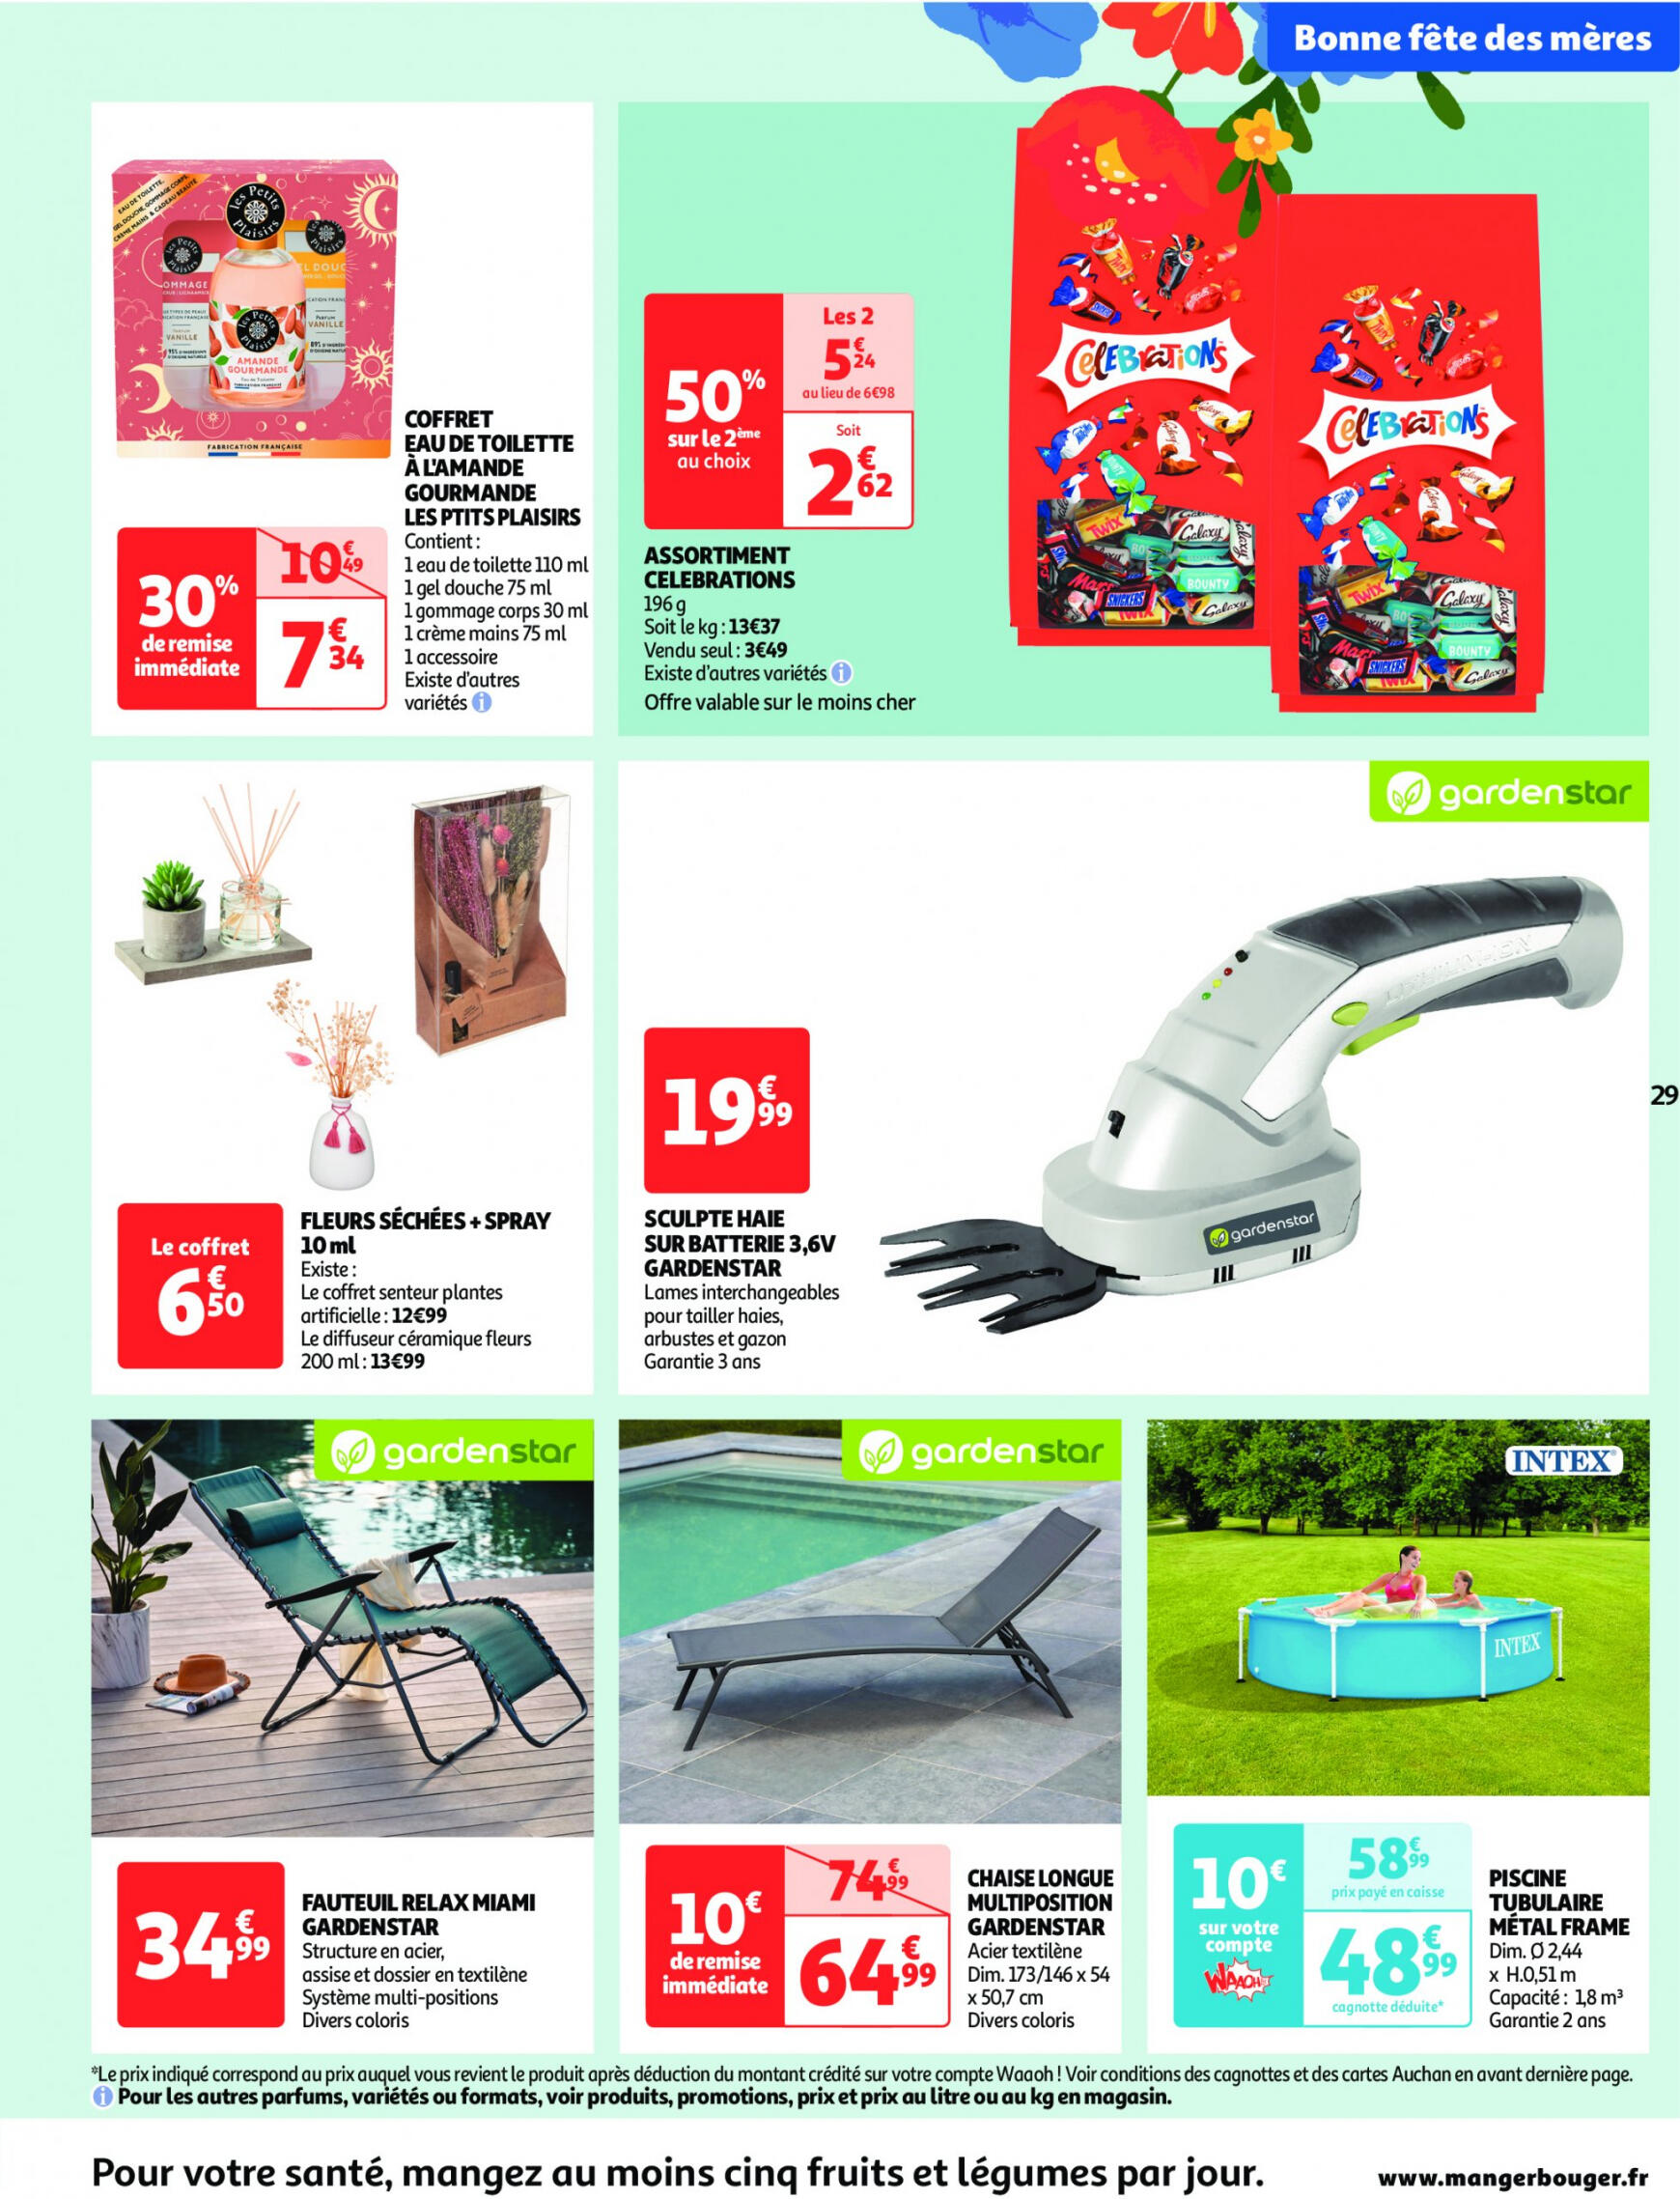 auchan - Auchan supermarché - Faites le plein de bonnes affaires folder huidig 22.05. - 26.05. - page: 29